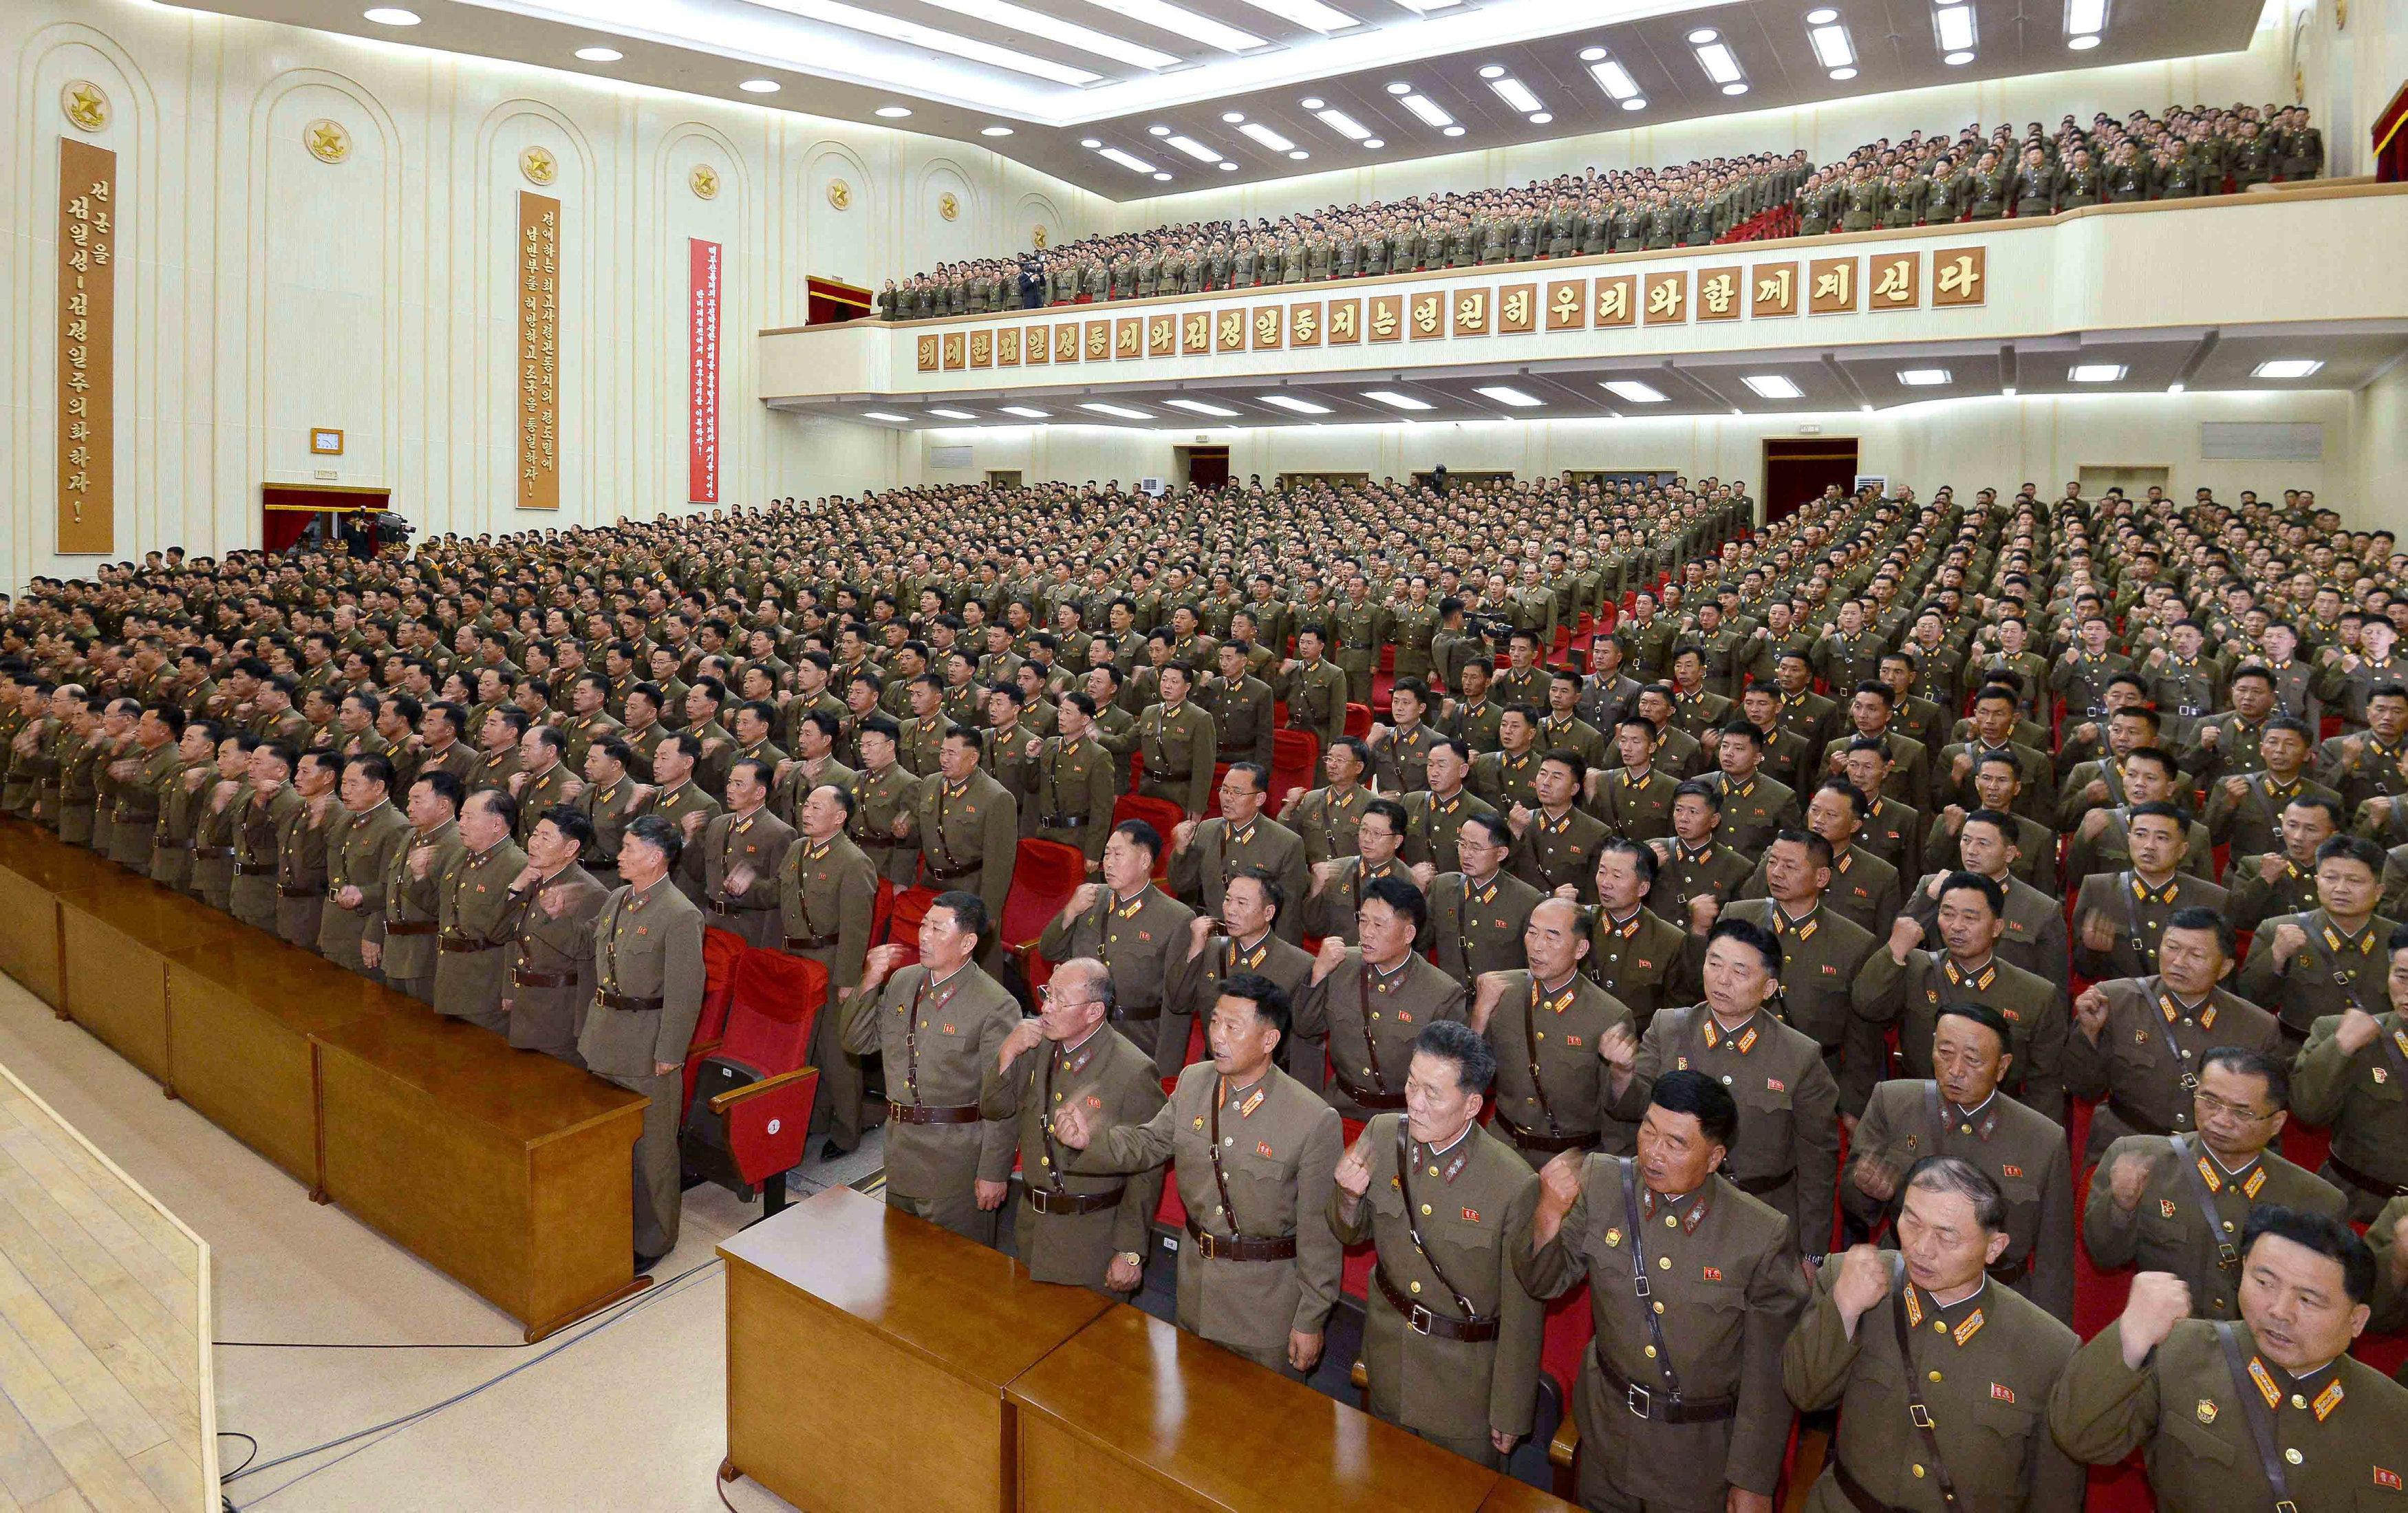 مئات العسكريين فى كوريا الشمالية يتعهدون بحرب مقدسة ضد الولايات المتحدة